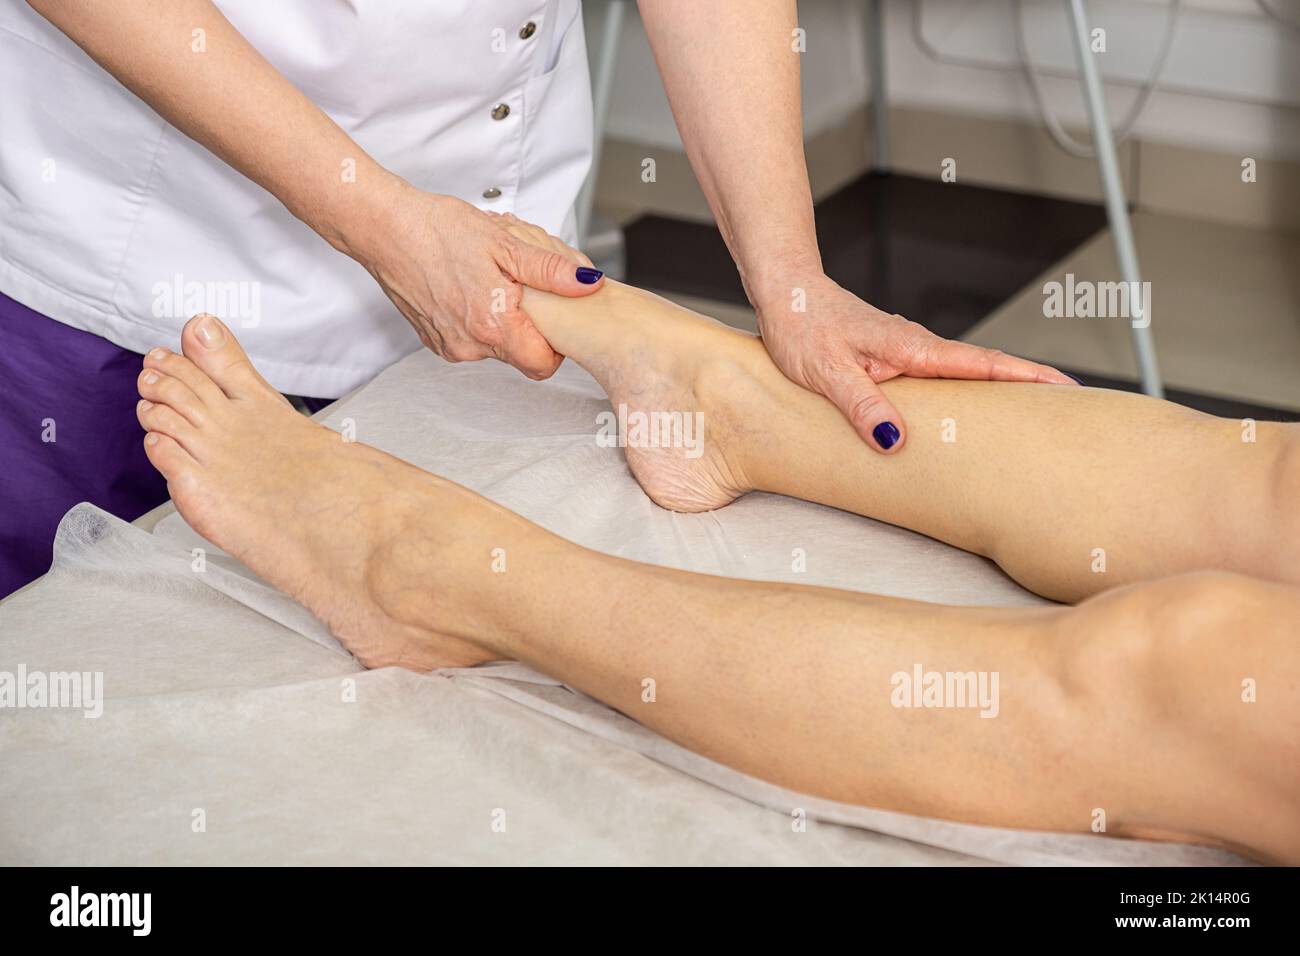 Foot massage in the spa salon. Body care concept Stock Photo